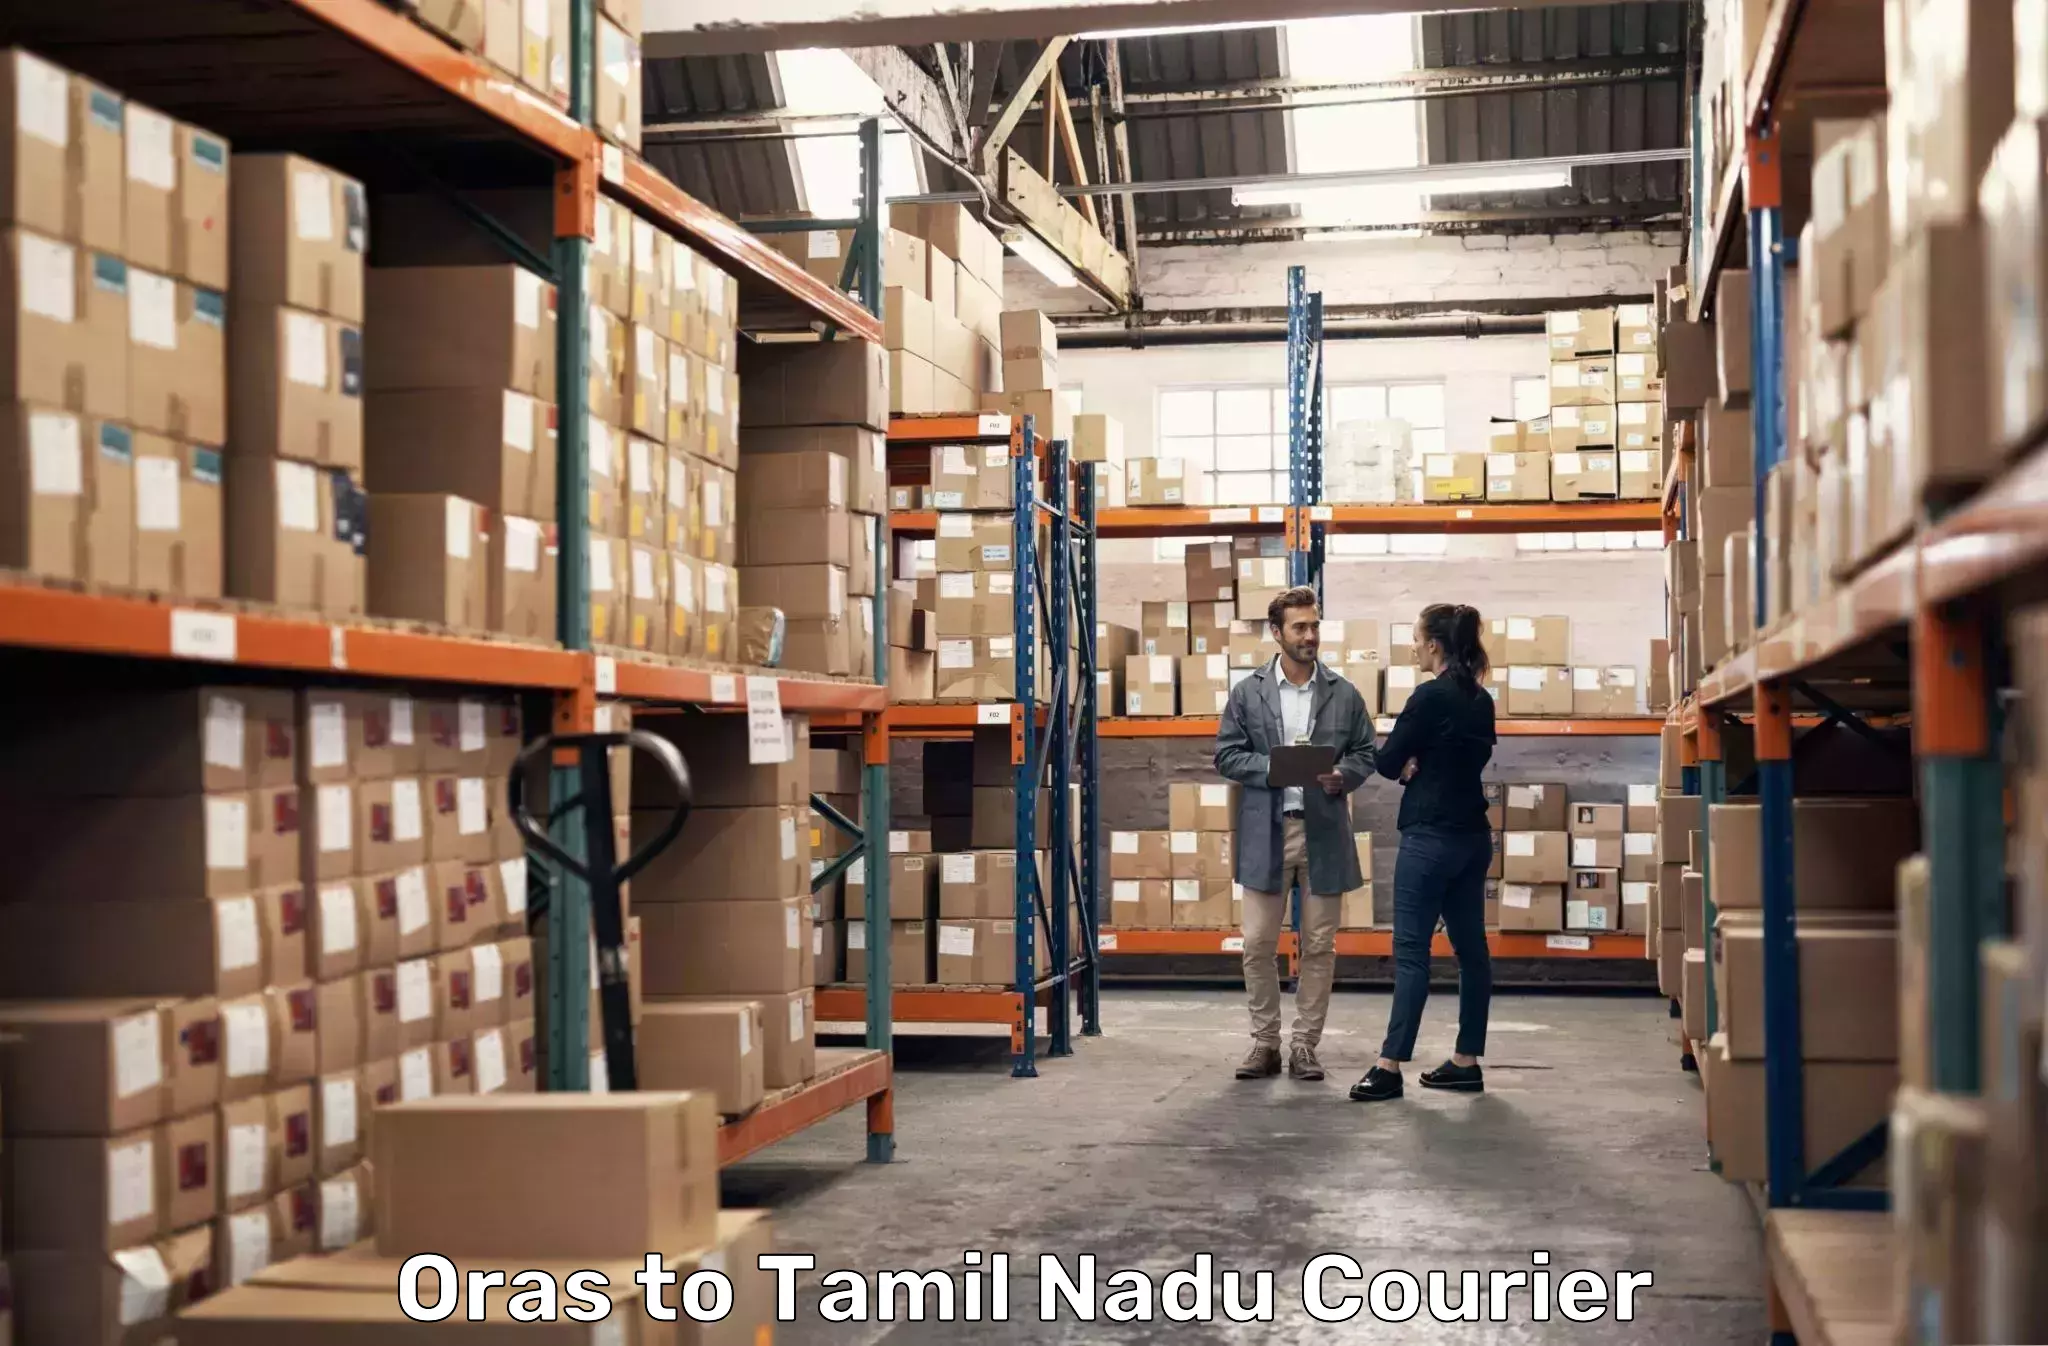 Efficient cargo handling Oras to Tamil Nadu